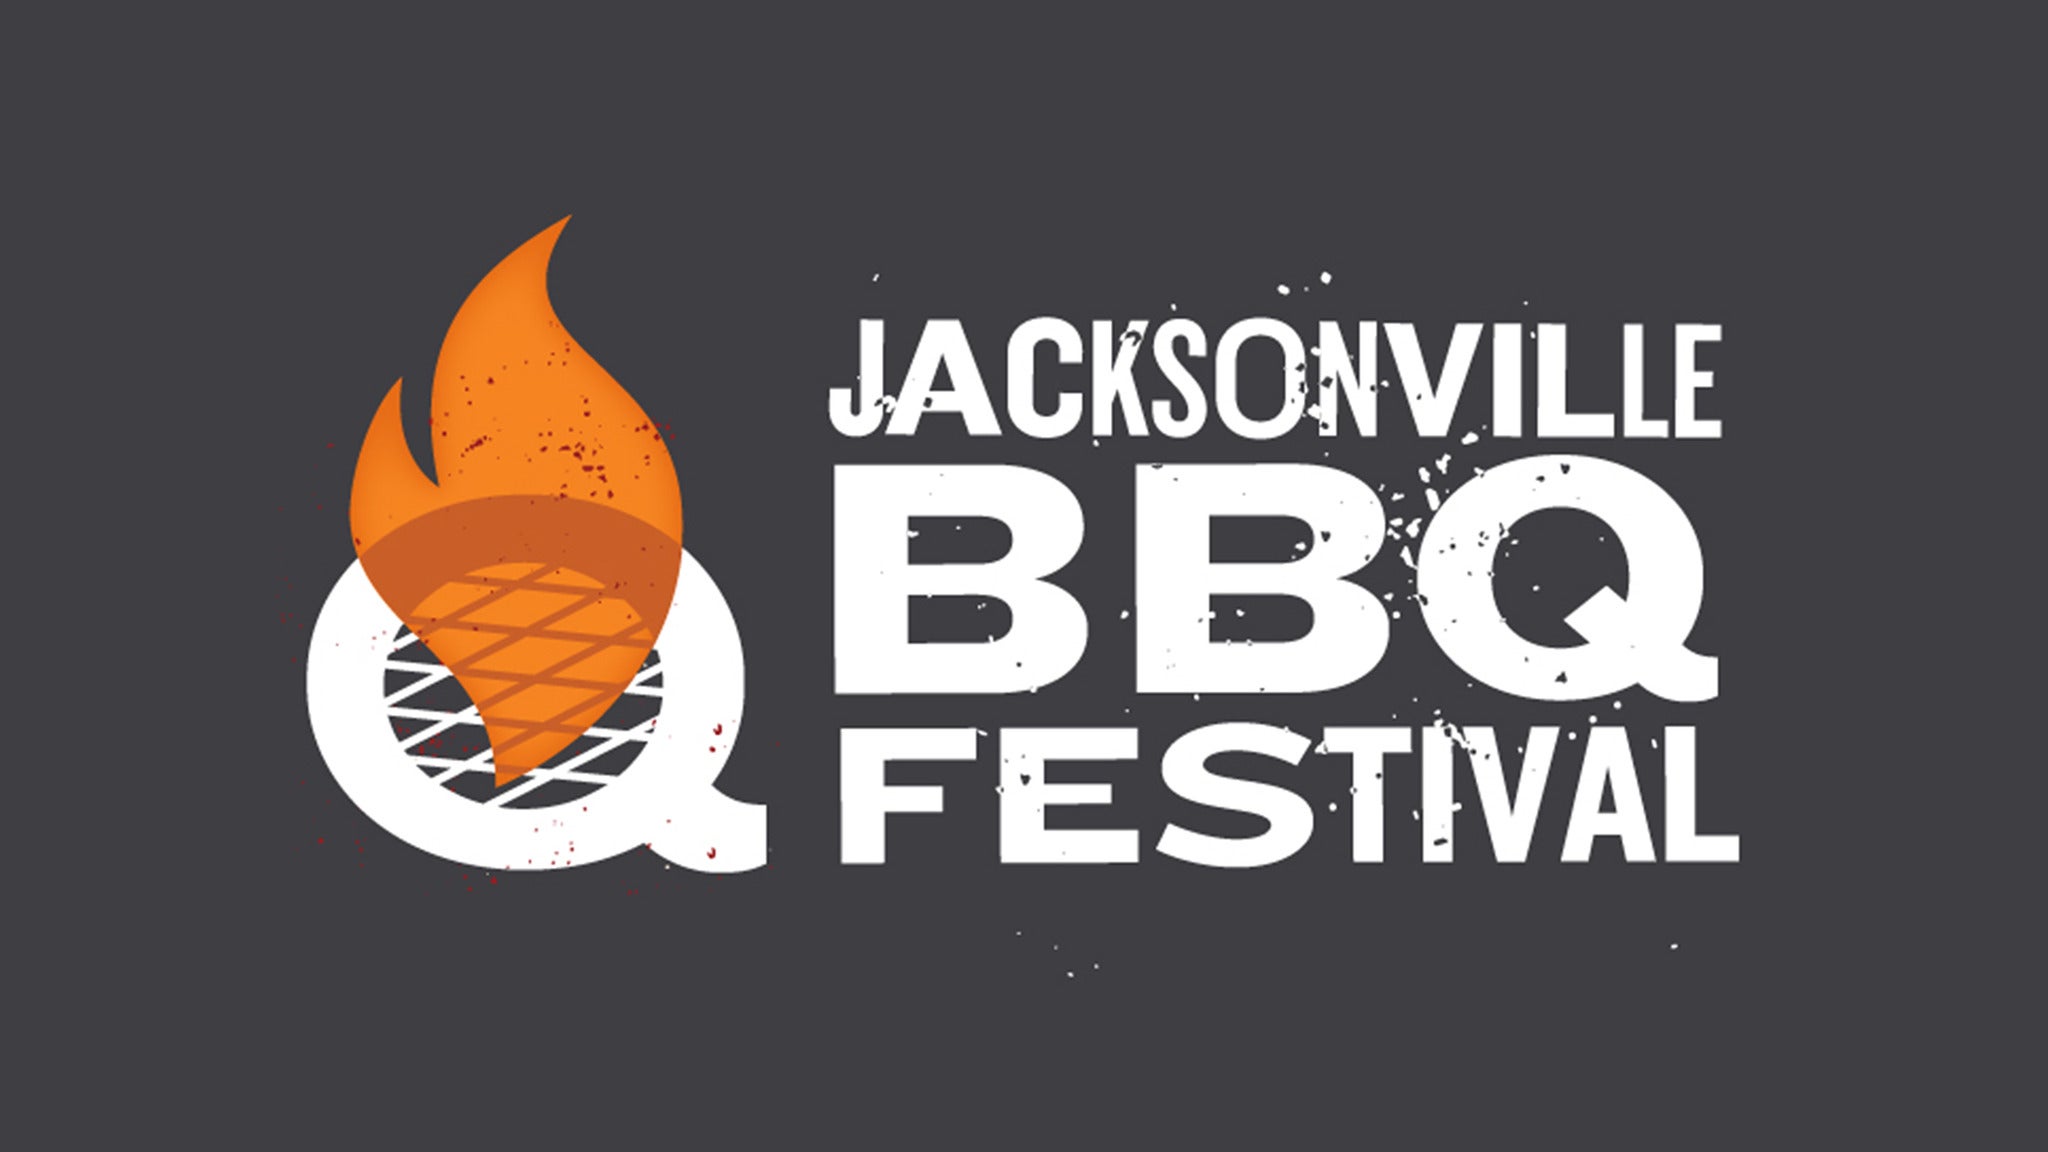 Jacksonville BBQ Festival Session 1 in Jacksonville promo photo for Stadium presale offer code